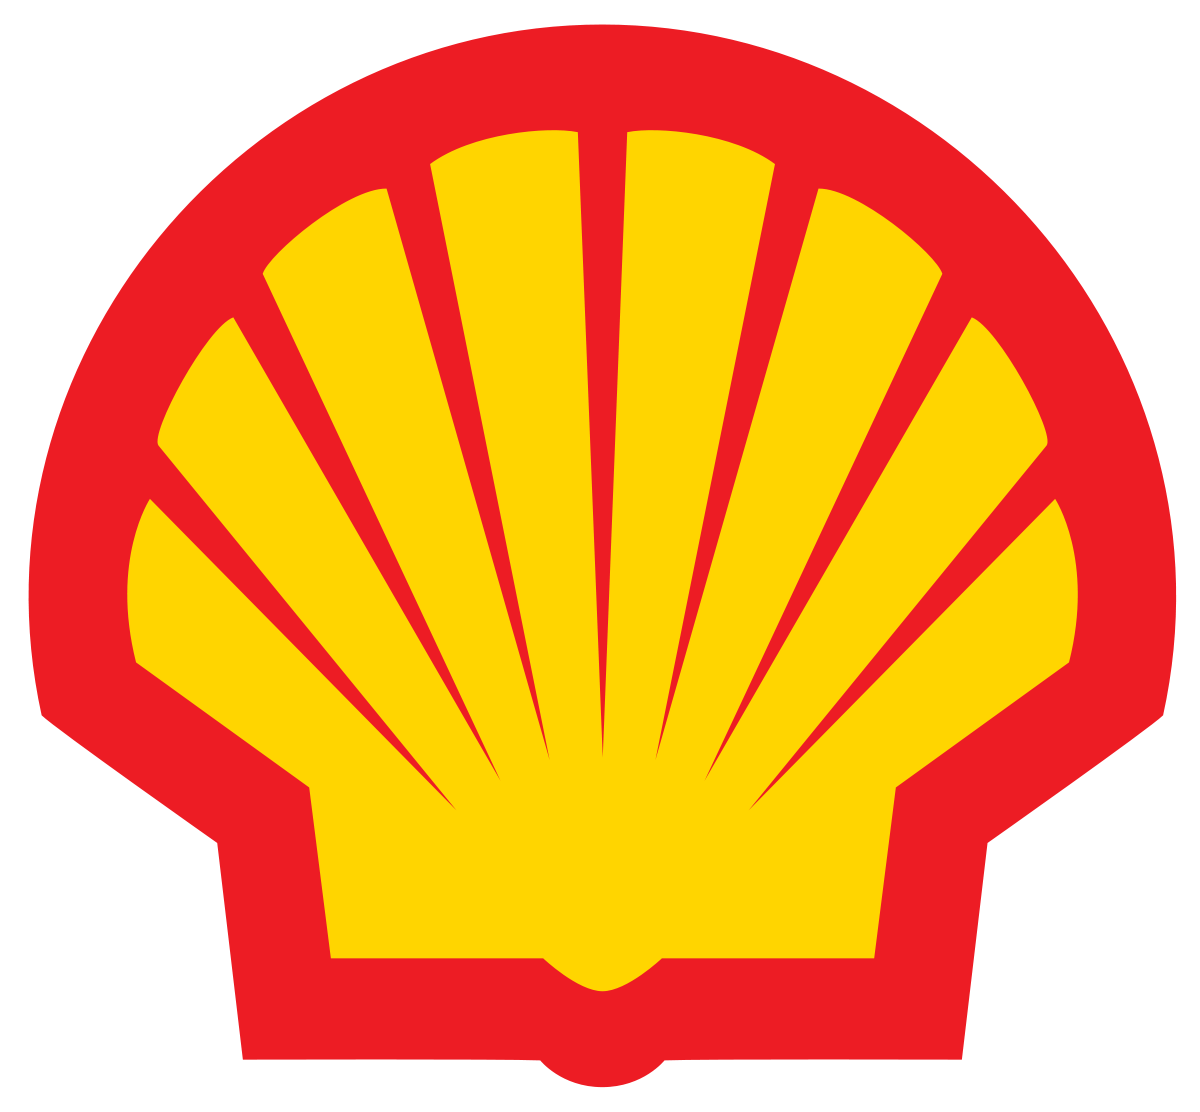 Old Shell Logo - Shell Oil Company